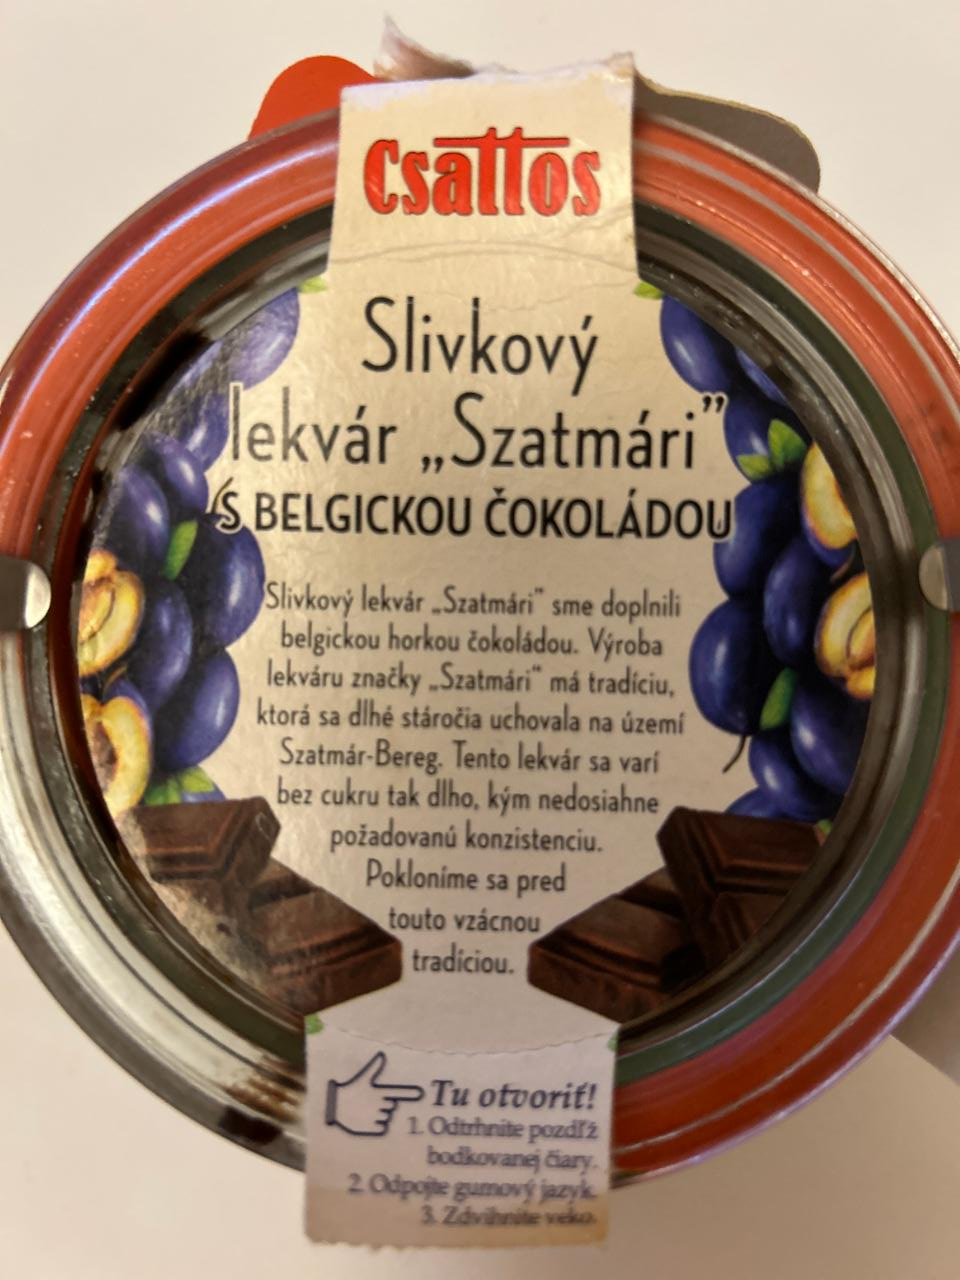 Fotografie - Slivkový lekvár “Szatmári” s belgickou čokoládou Csattos